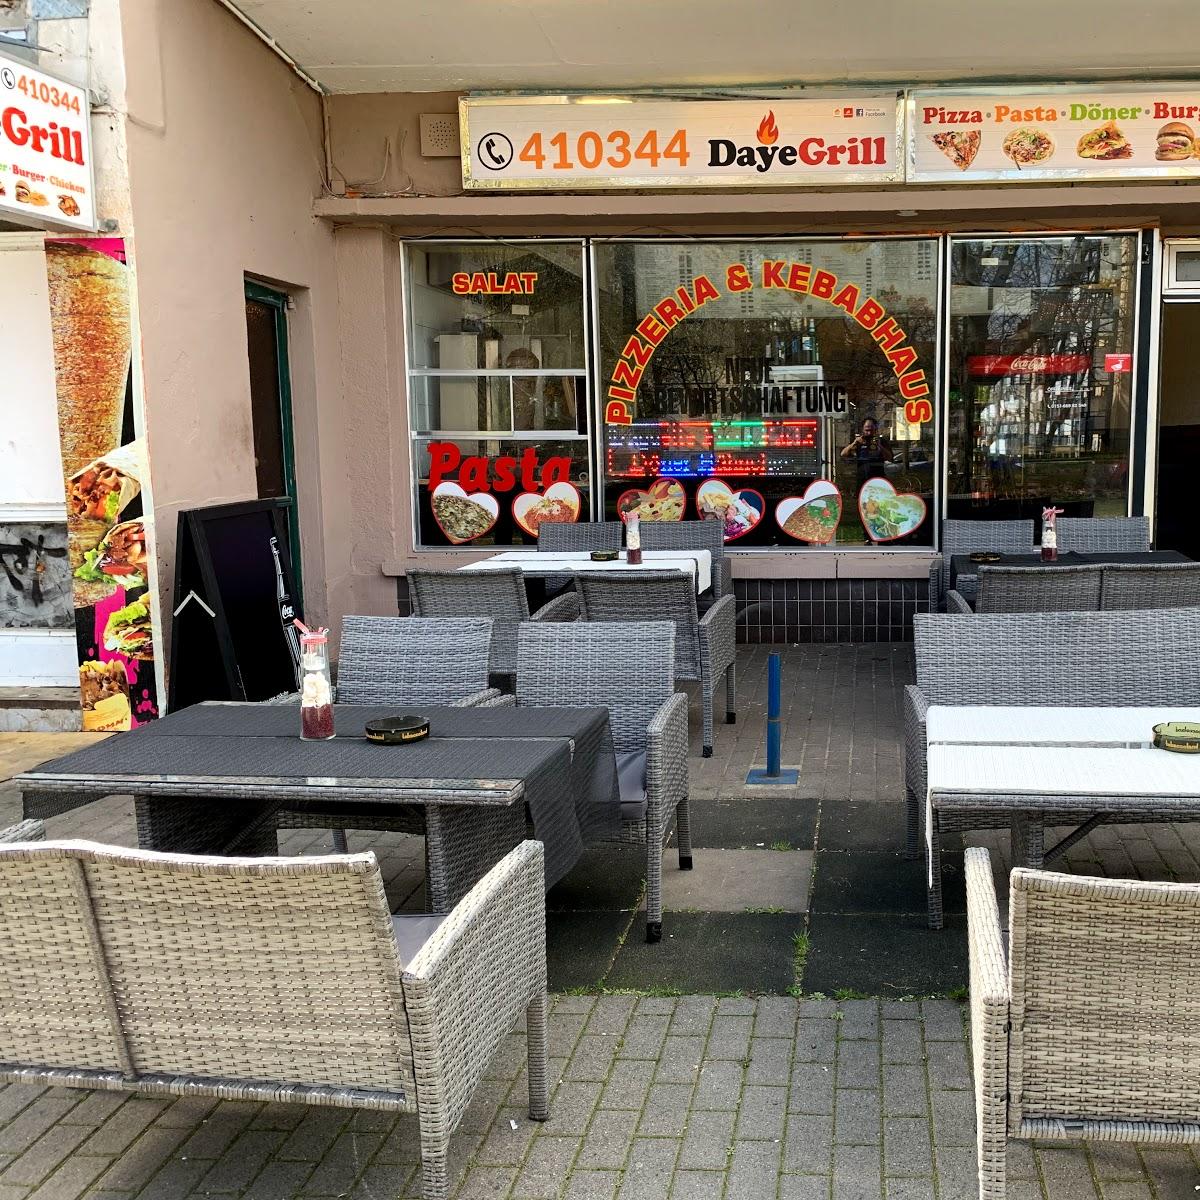 Restaurant "Pizzeria & Kebabhaus Daye" in Brandenburg an der Havel